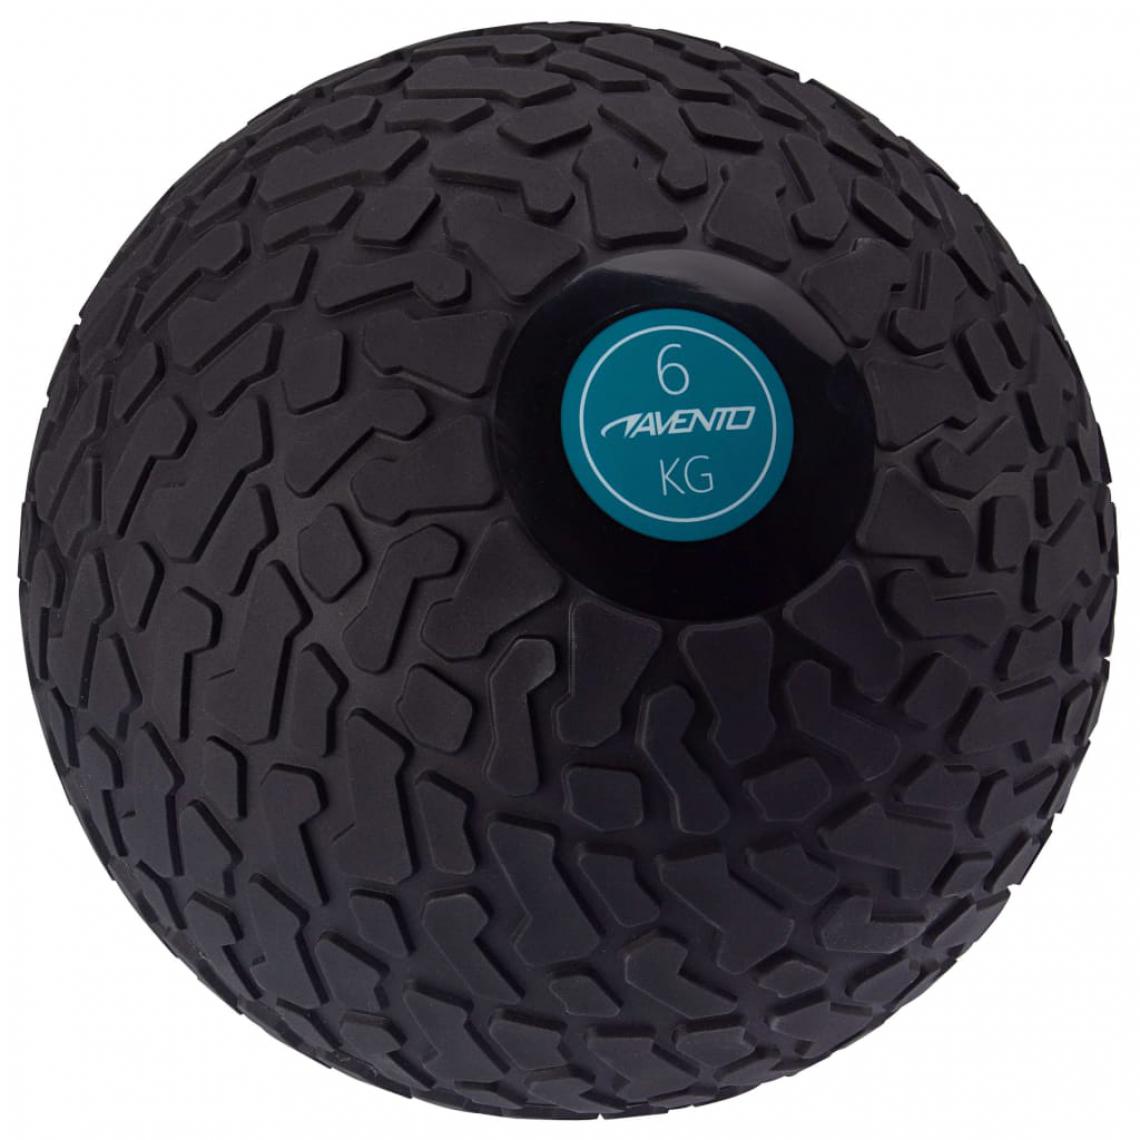 Avento - Avento Balle texturée 6 kg Noir - Jeux de balles